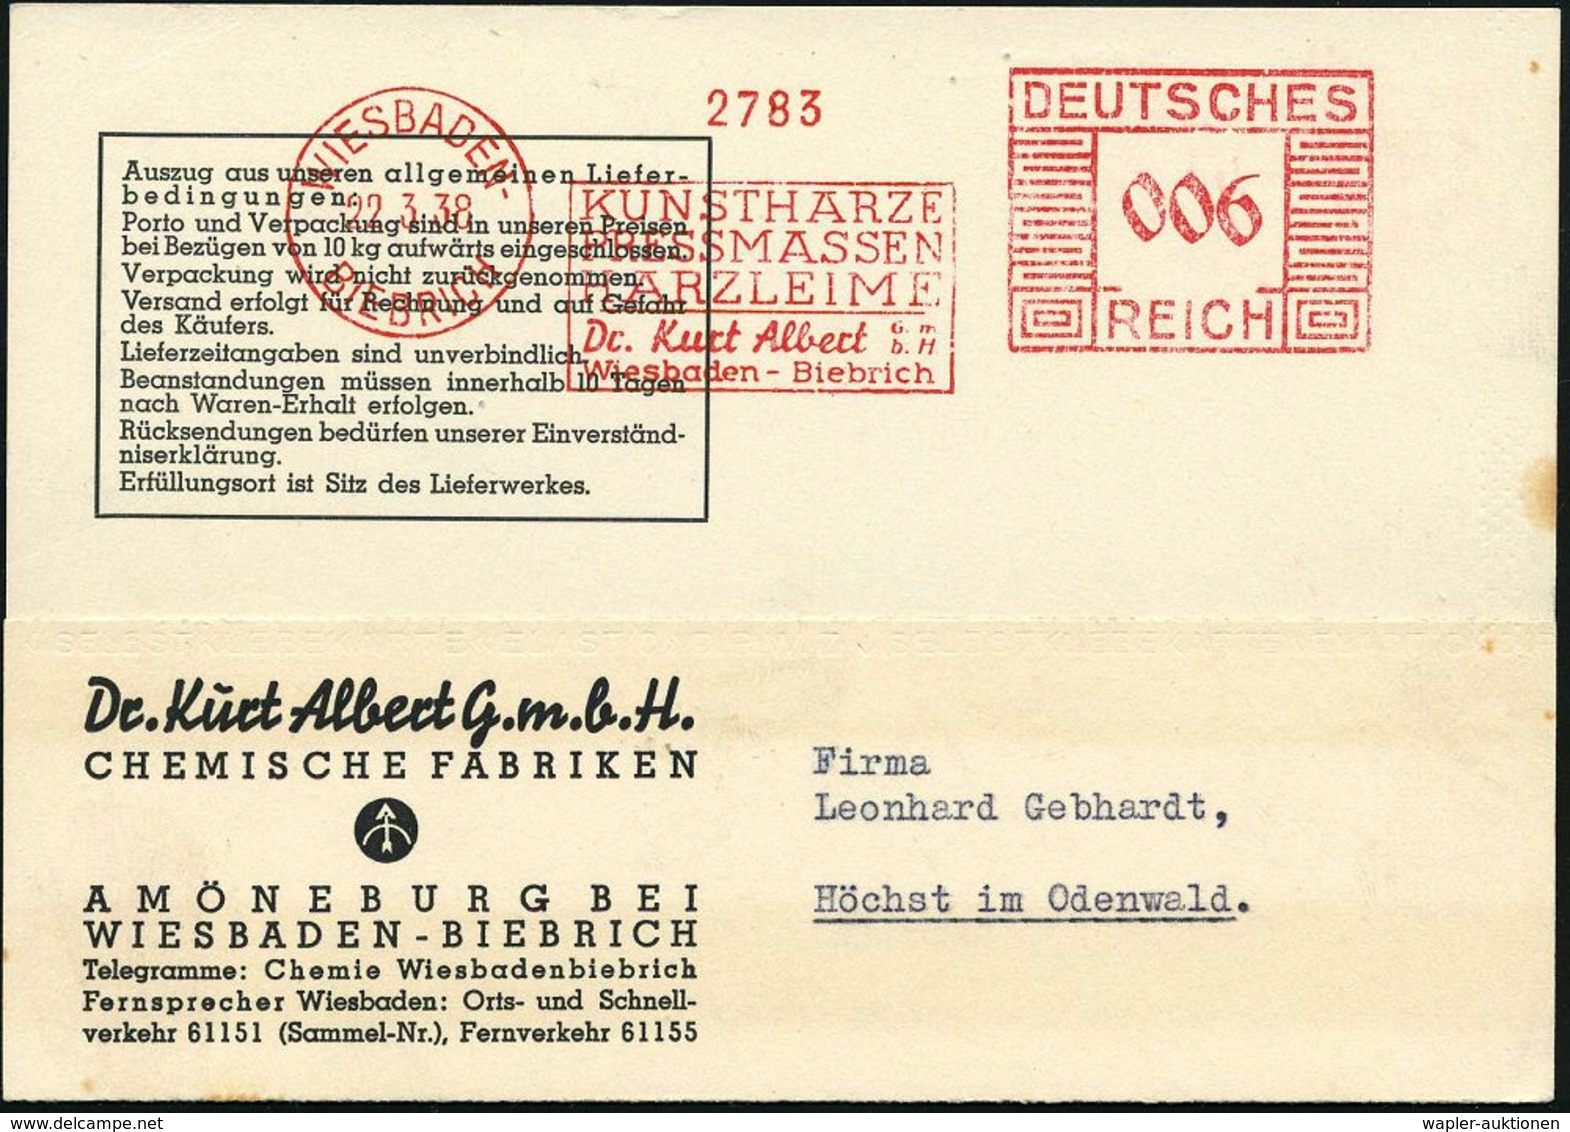 KUNSTSTOFFE & -FASERN / PLASTIK : WIESBADEN-/ BIEBRICH/ KUNSTHARZE/ PRESSMASSEN/ HARZLEIME/ Dr.Kurt Albert.. 1938 (22.3. - Chimie